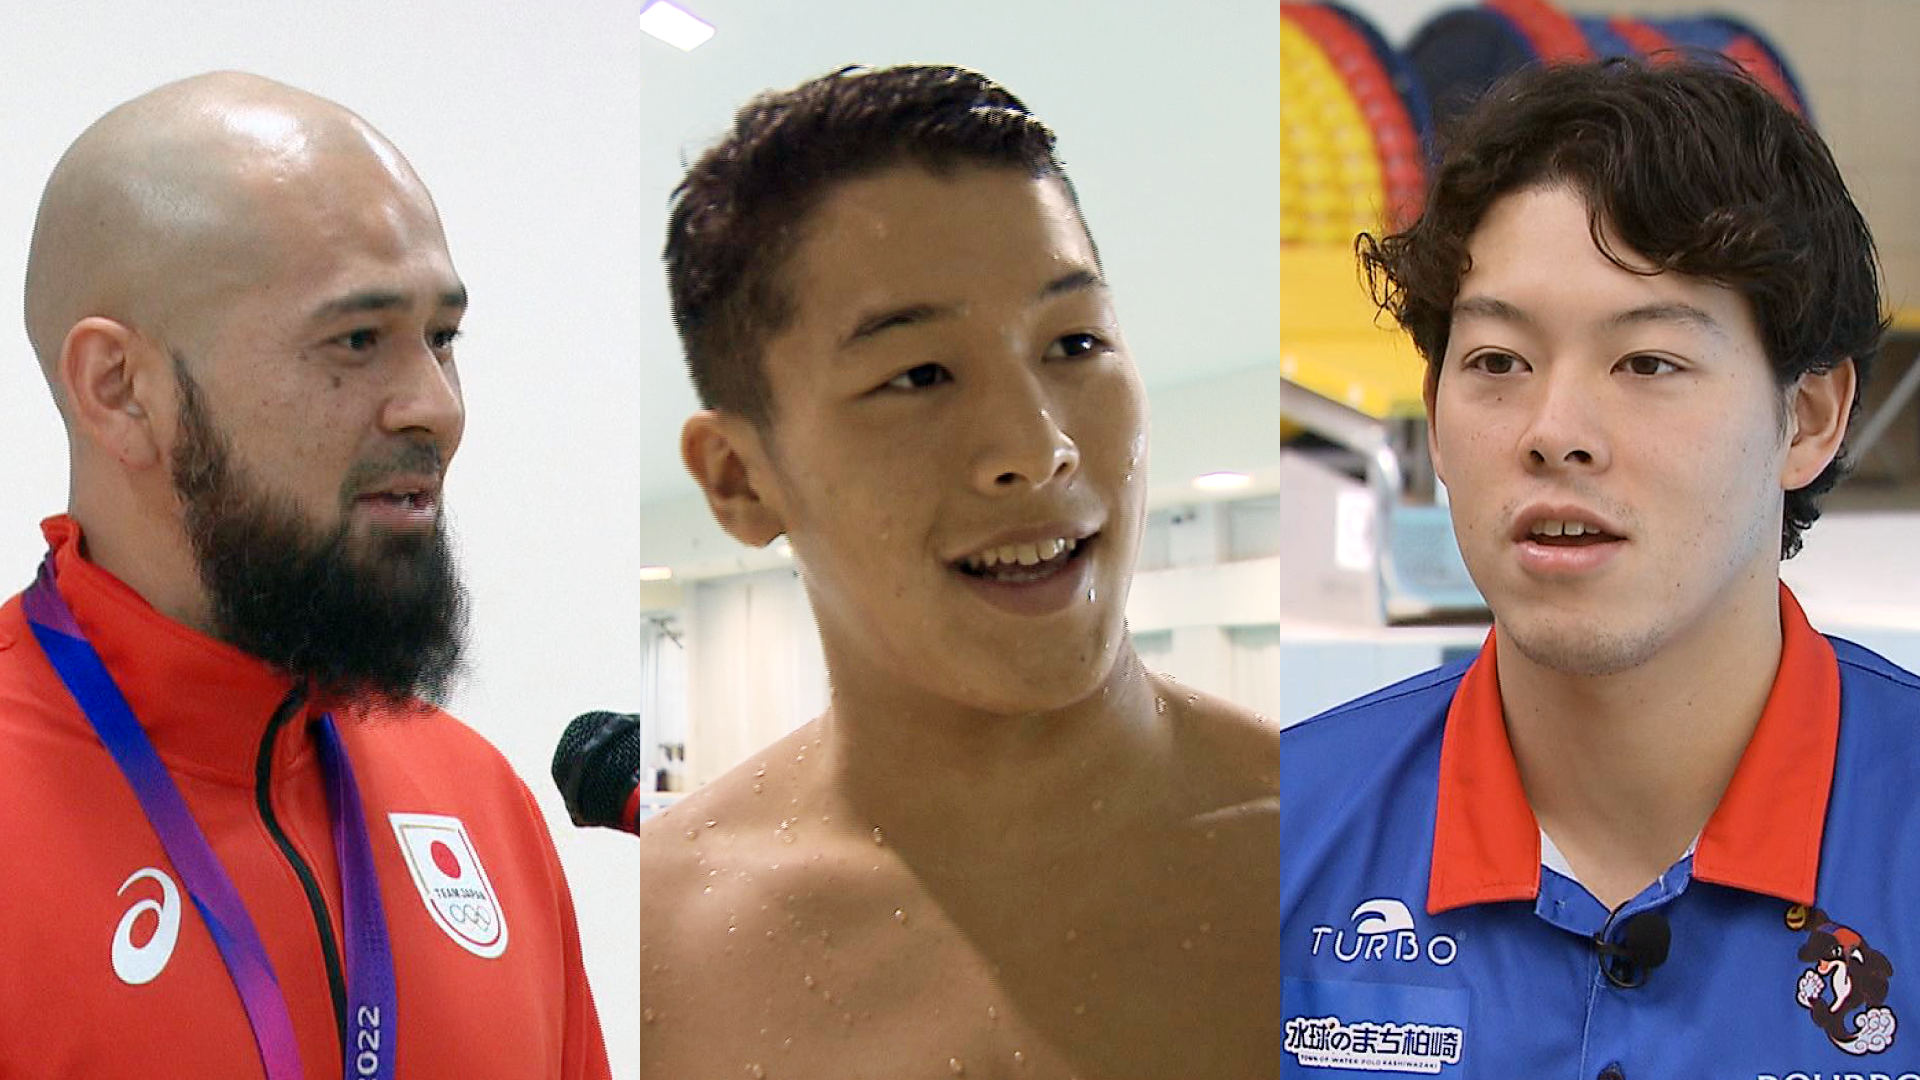 パリ五輪 水球日本代表に 柏崎市のクラブチーム・ブルボンKZから代表3人選出 